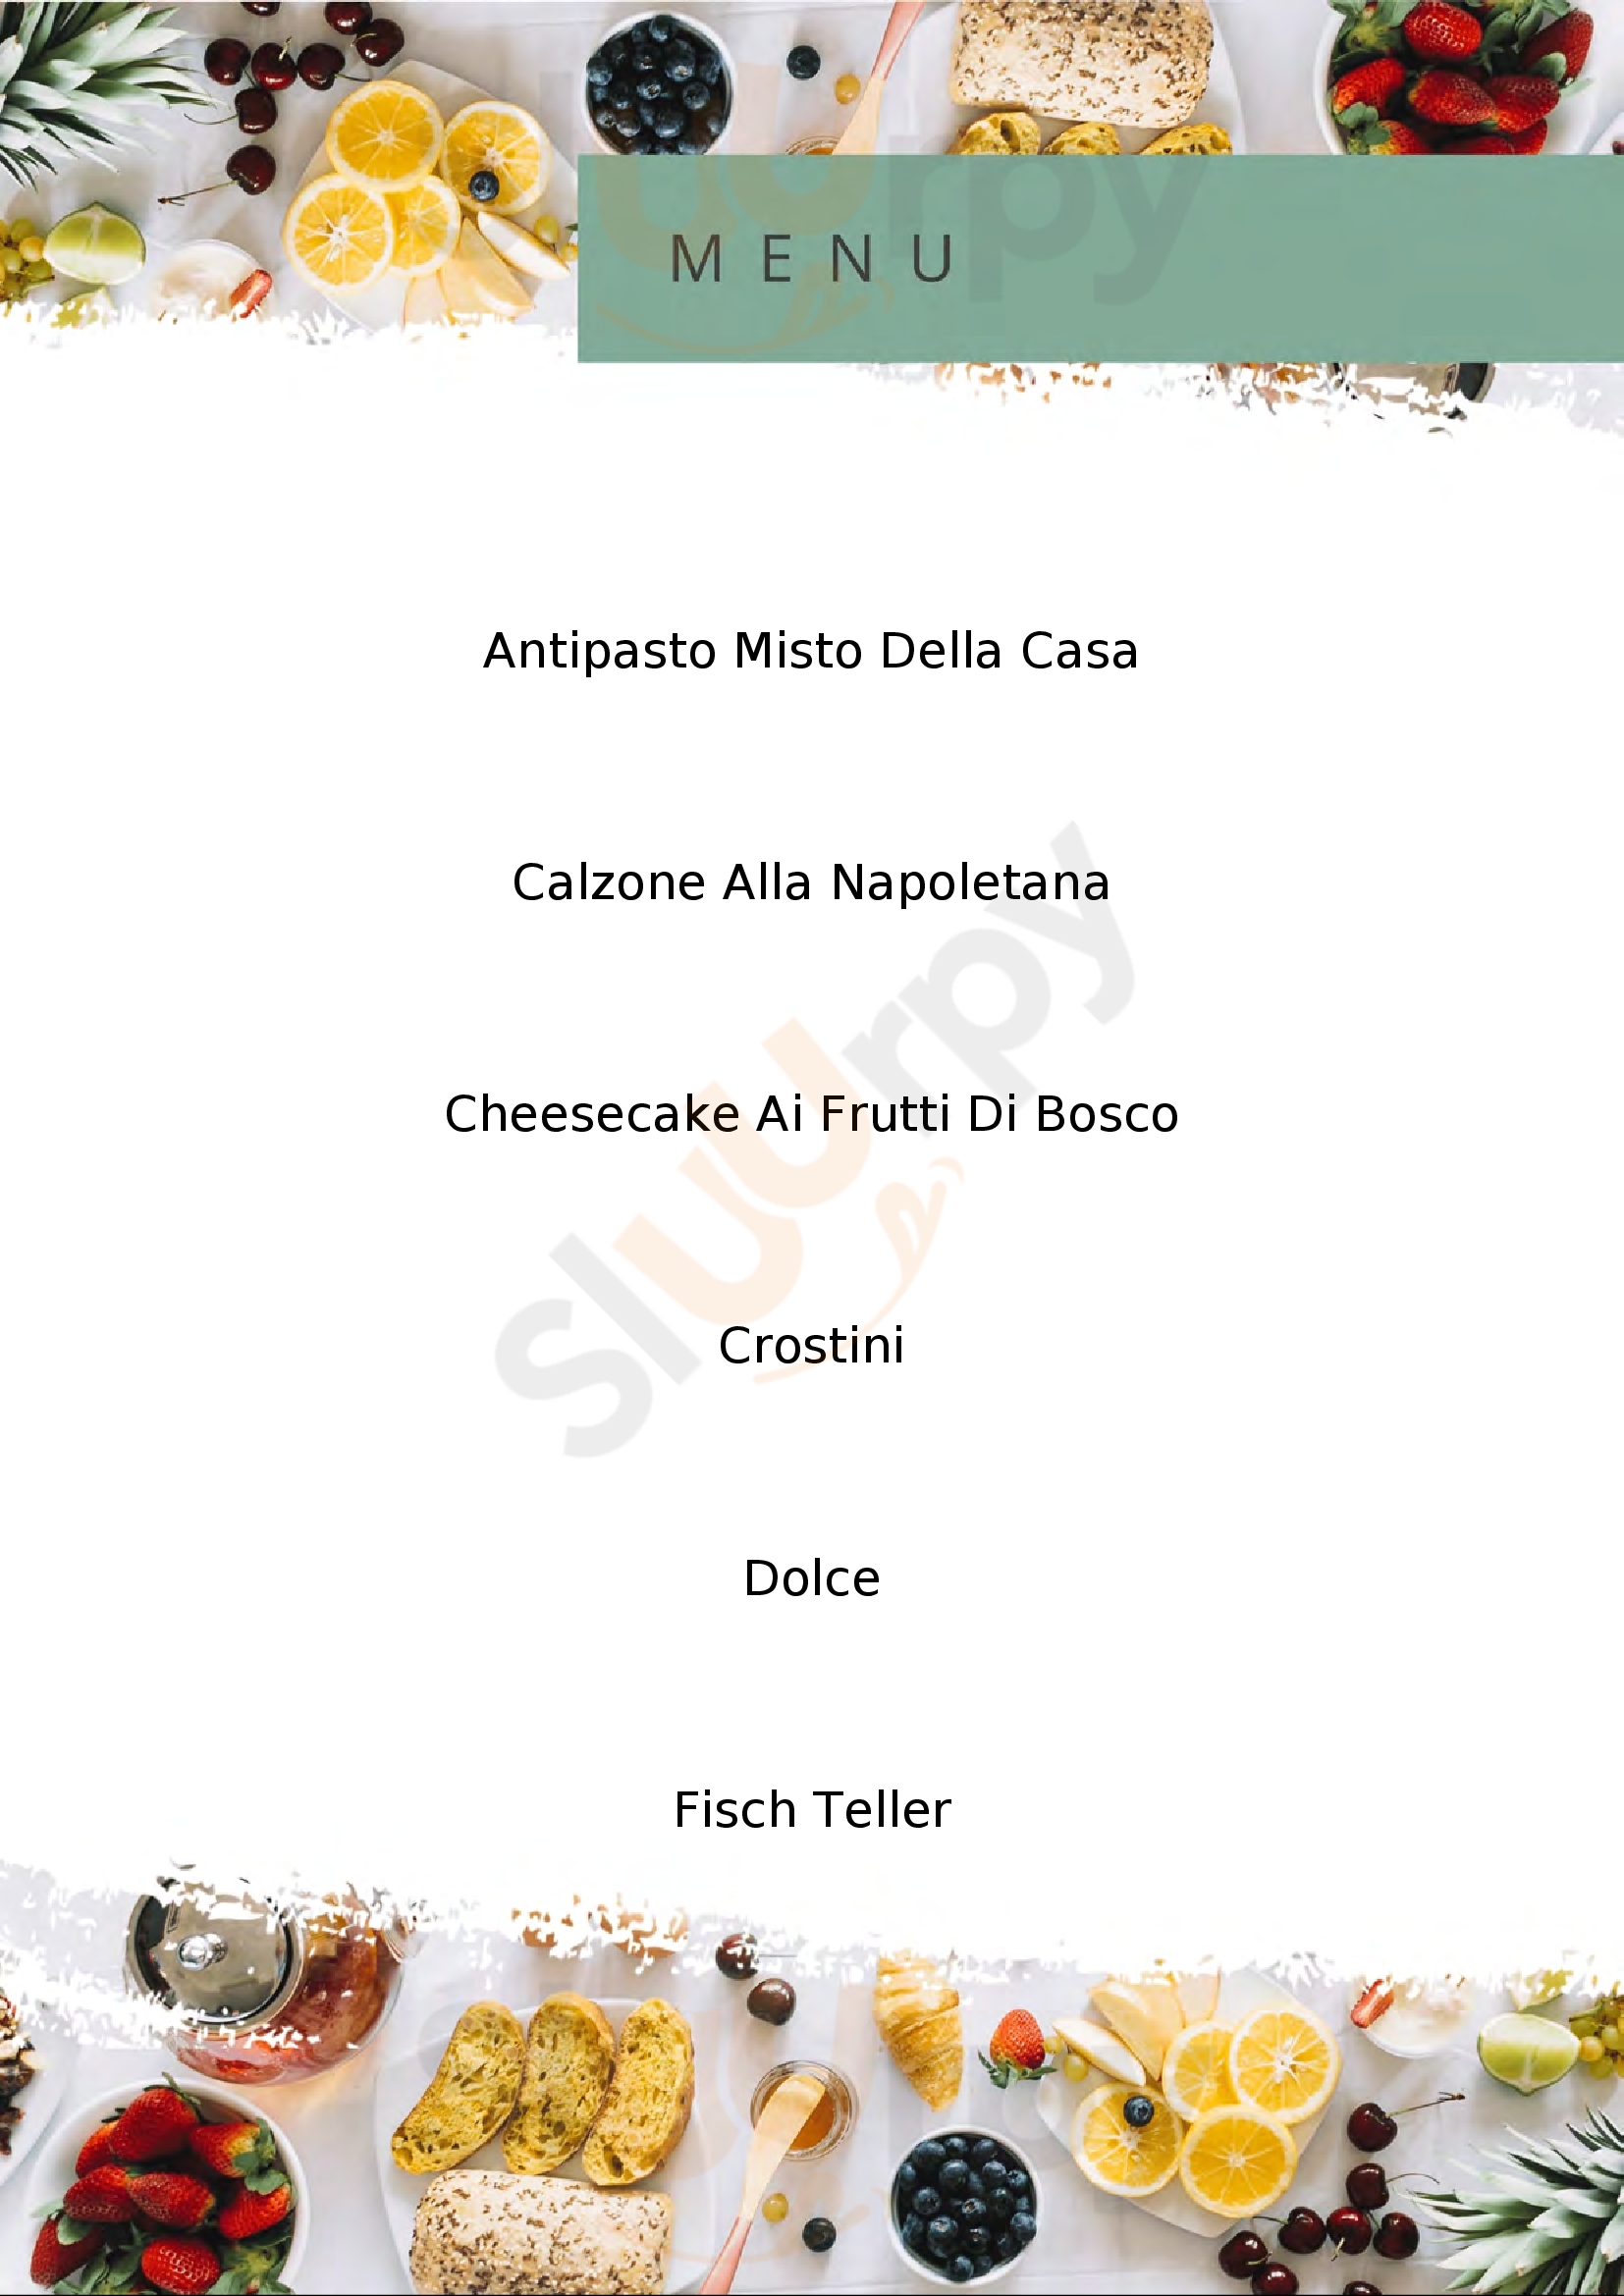 Al Ledra Ristorante Pizzeria Artegna menù 1 pagina